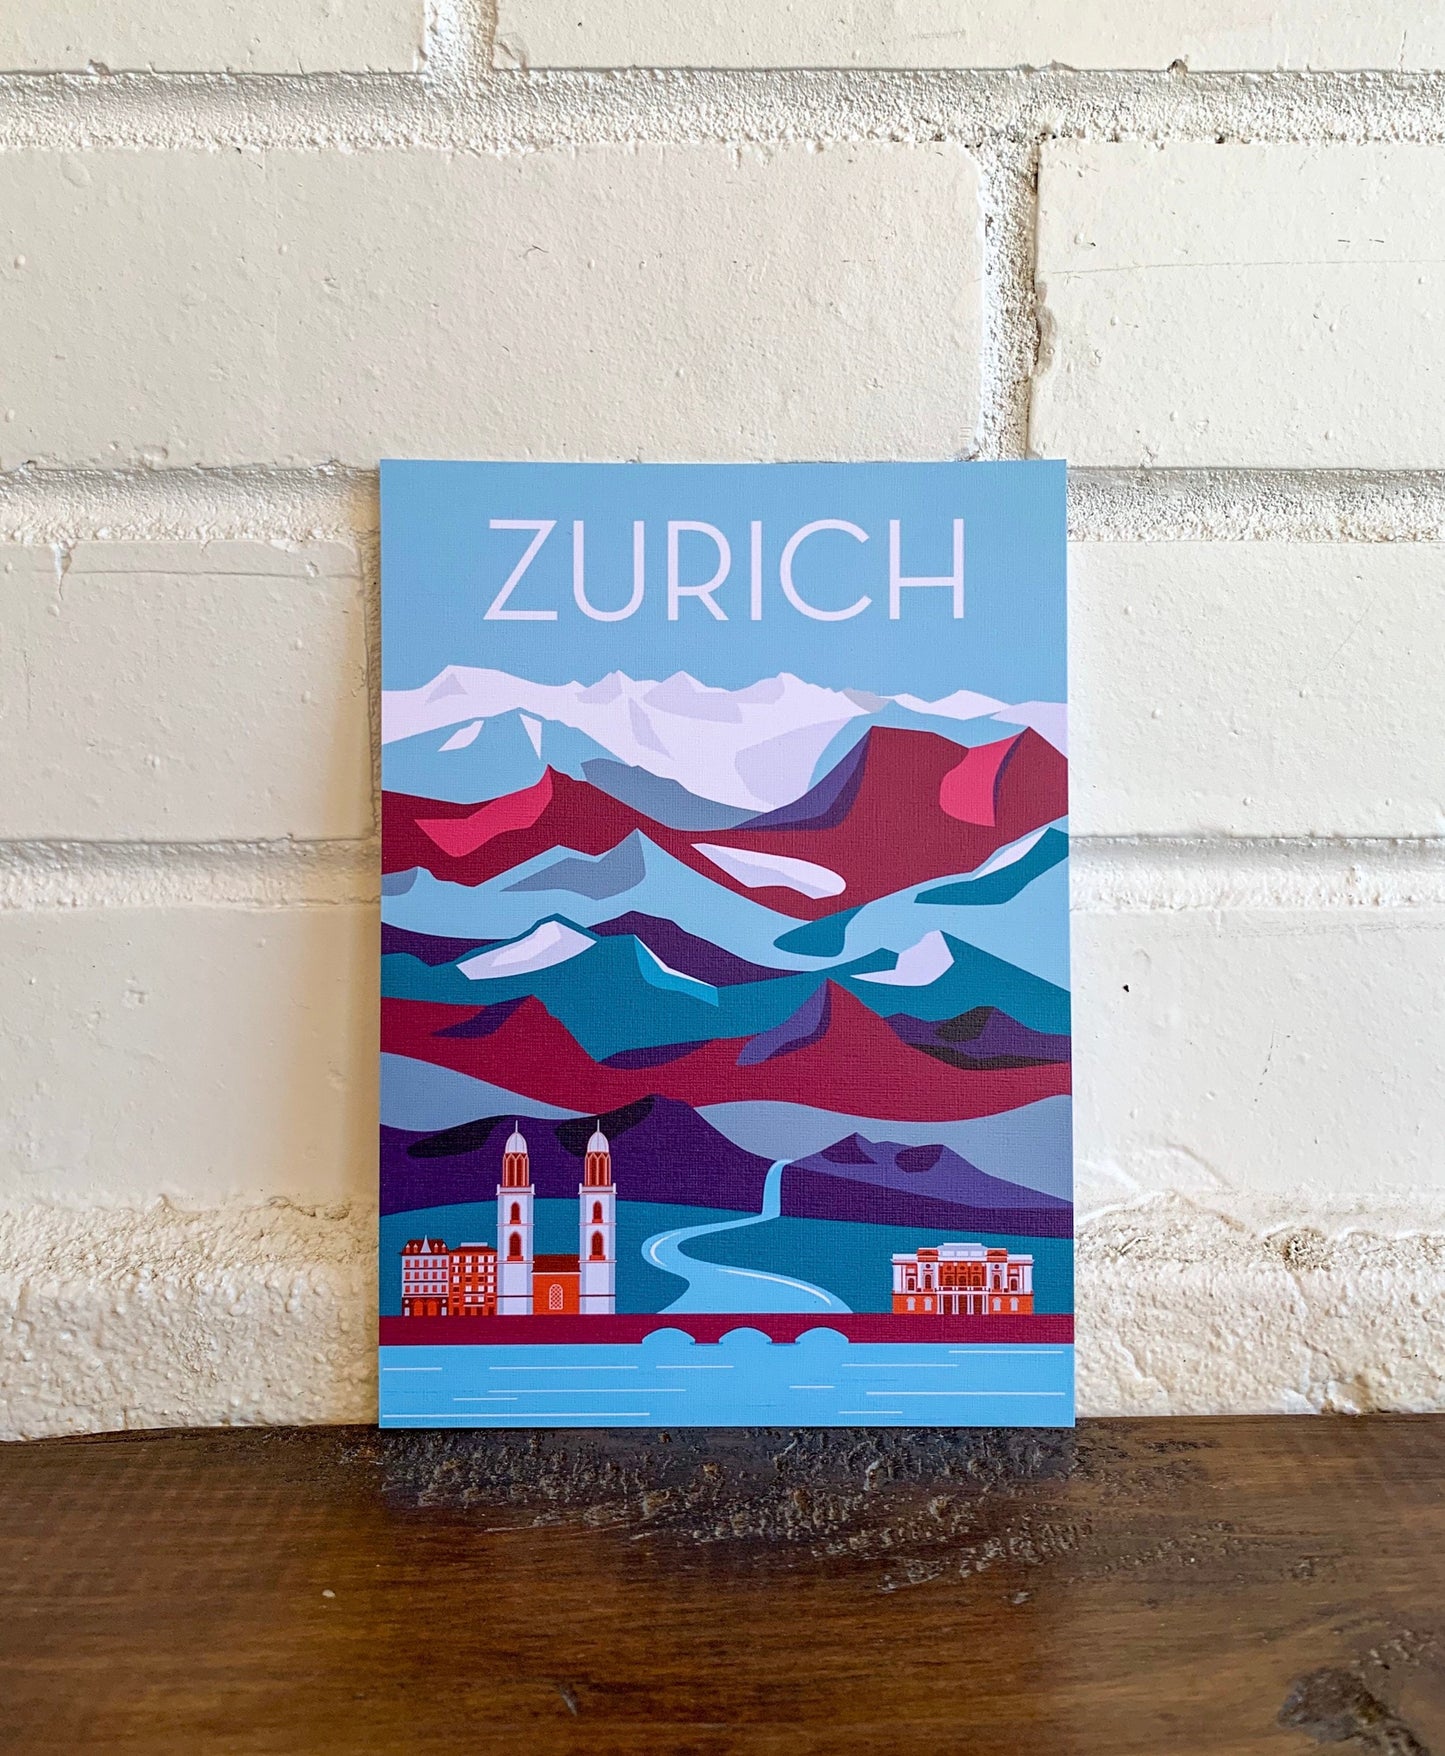 Zurich, Switzerland Travel Postcard